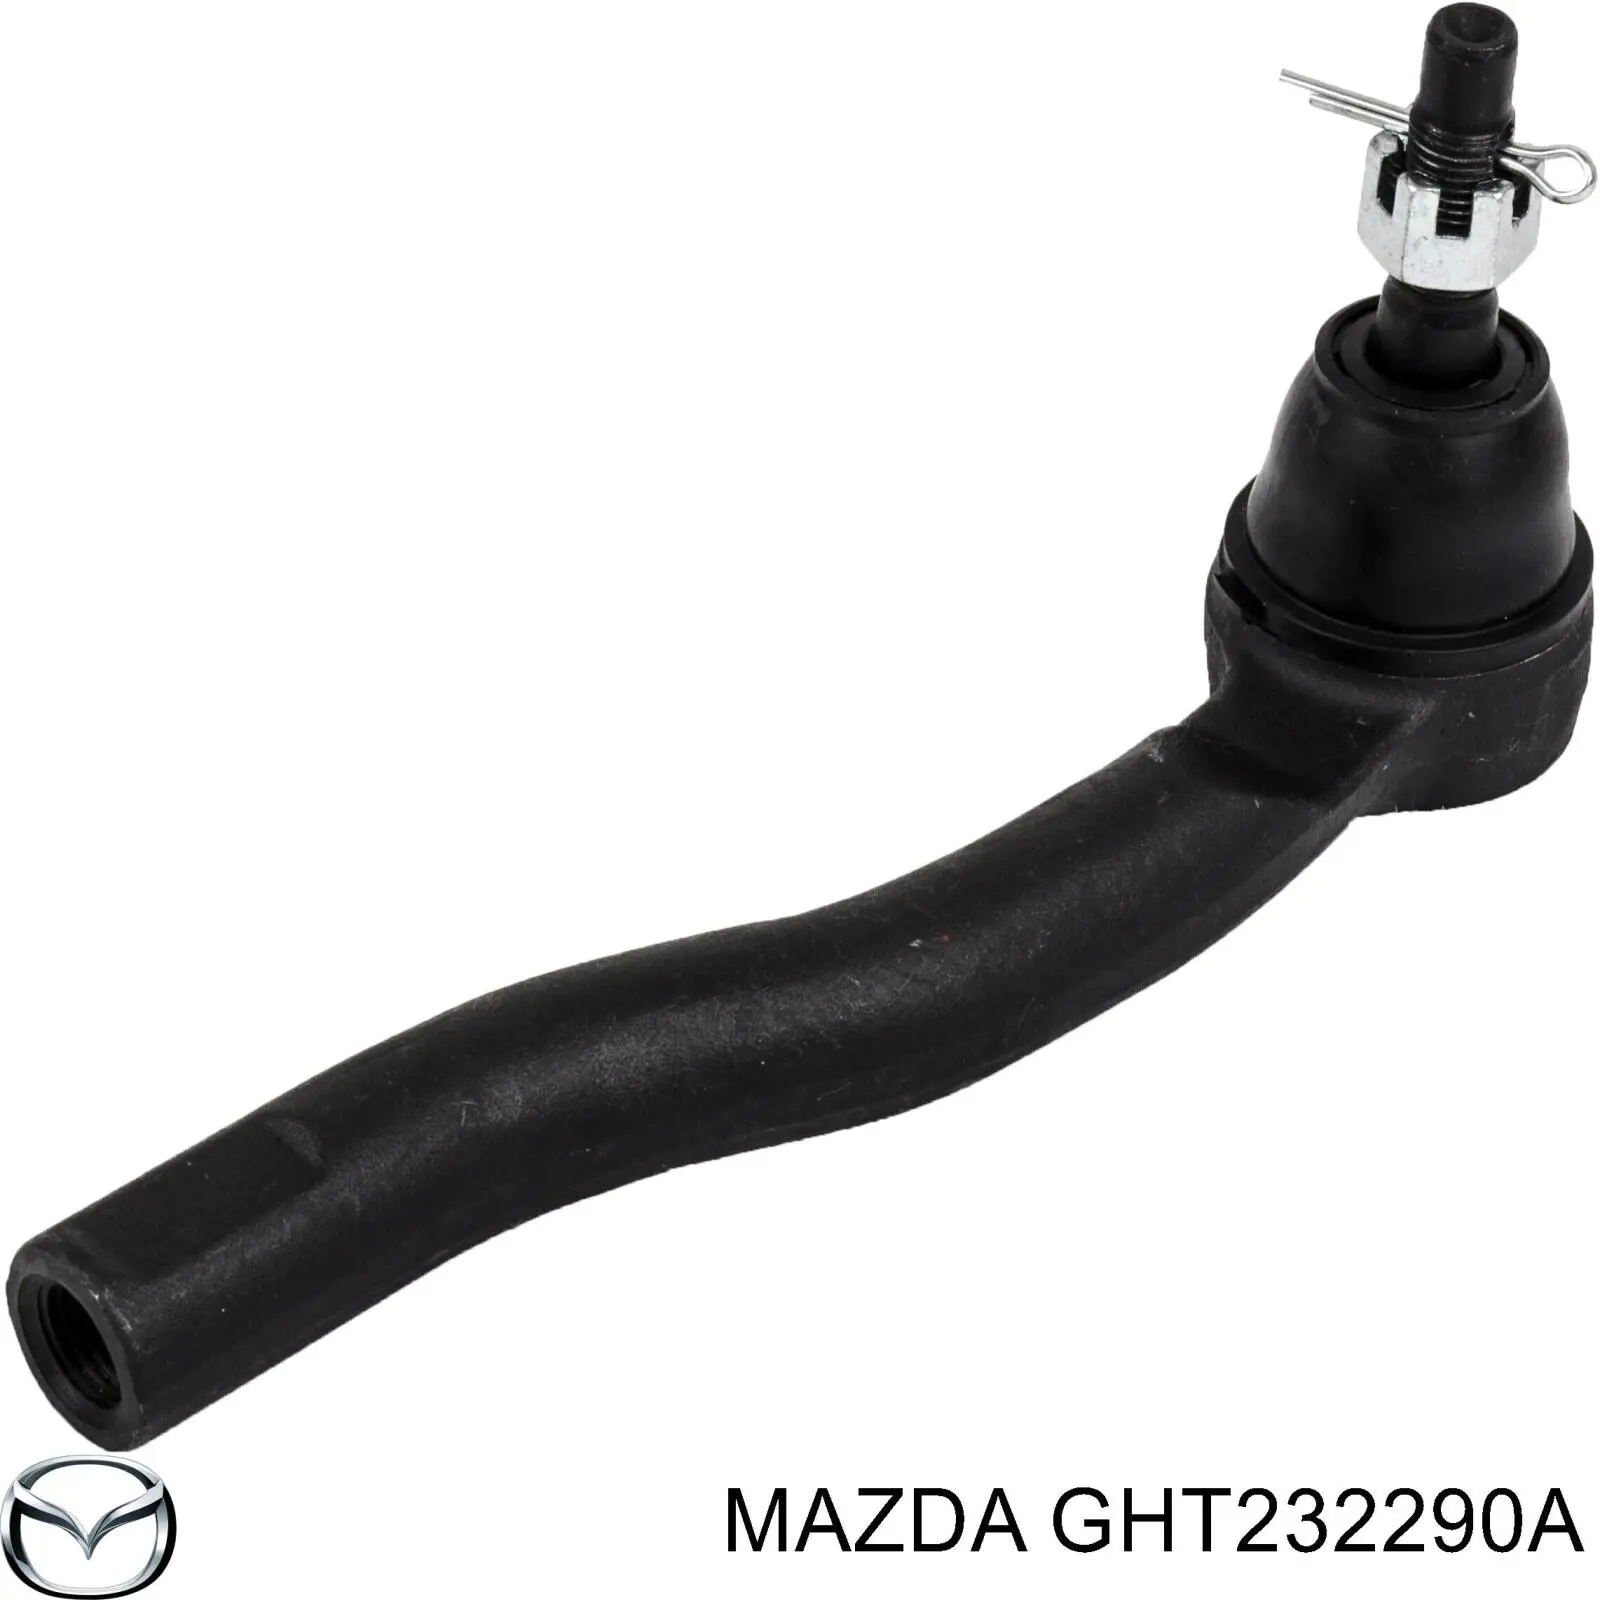 GHT232290A Mazda ponta externa da barra de direção